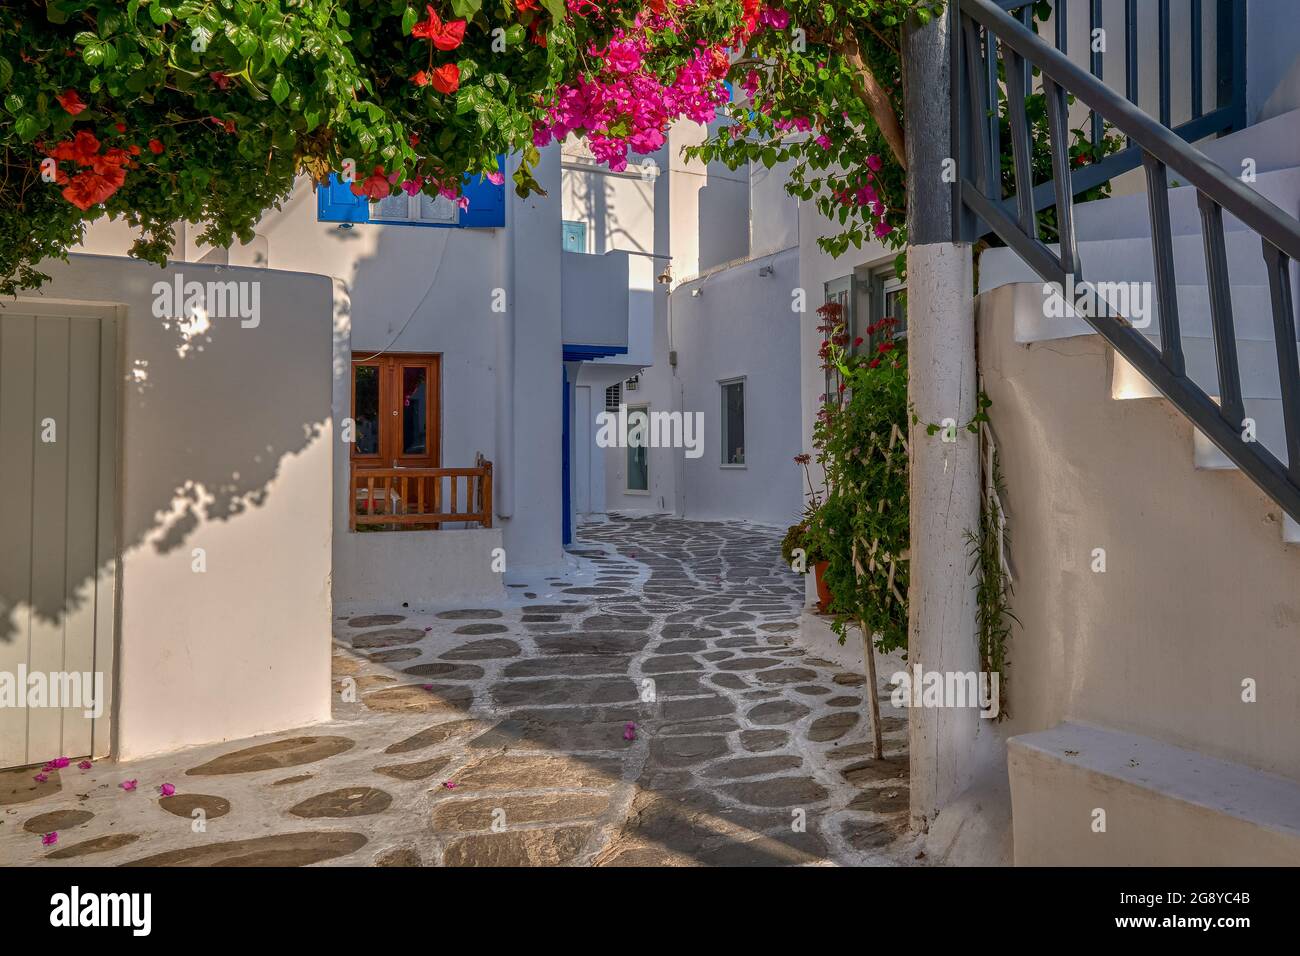 Wunderschöne traditionelle Straße in der griechischen Inselstadt. Weiß getünchte Häuser, blühende Bougainvillea, Kopfsteinpflaster. Mykonos, Griechenland Stockfoto